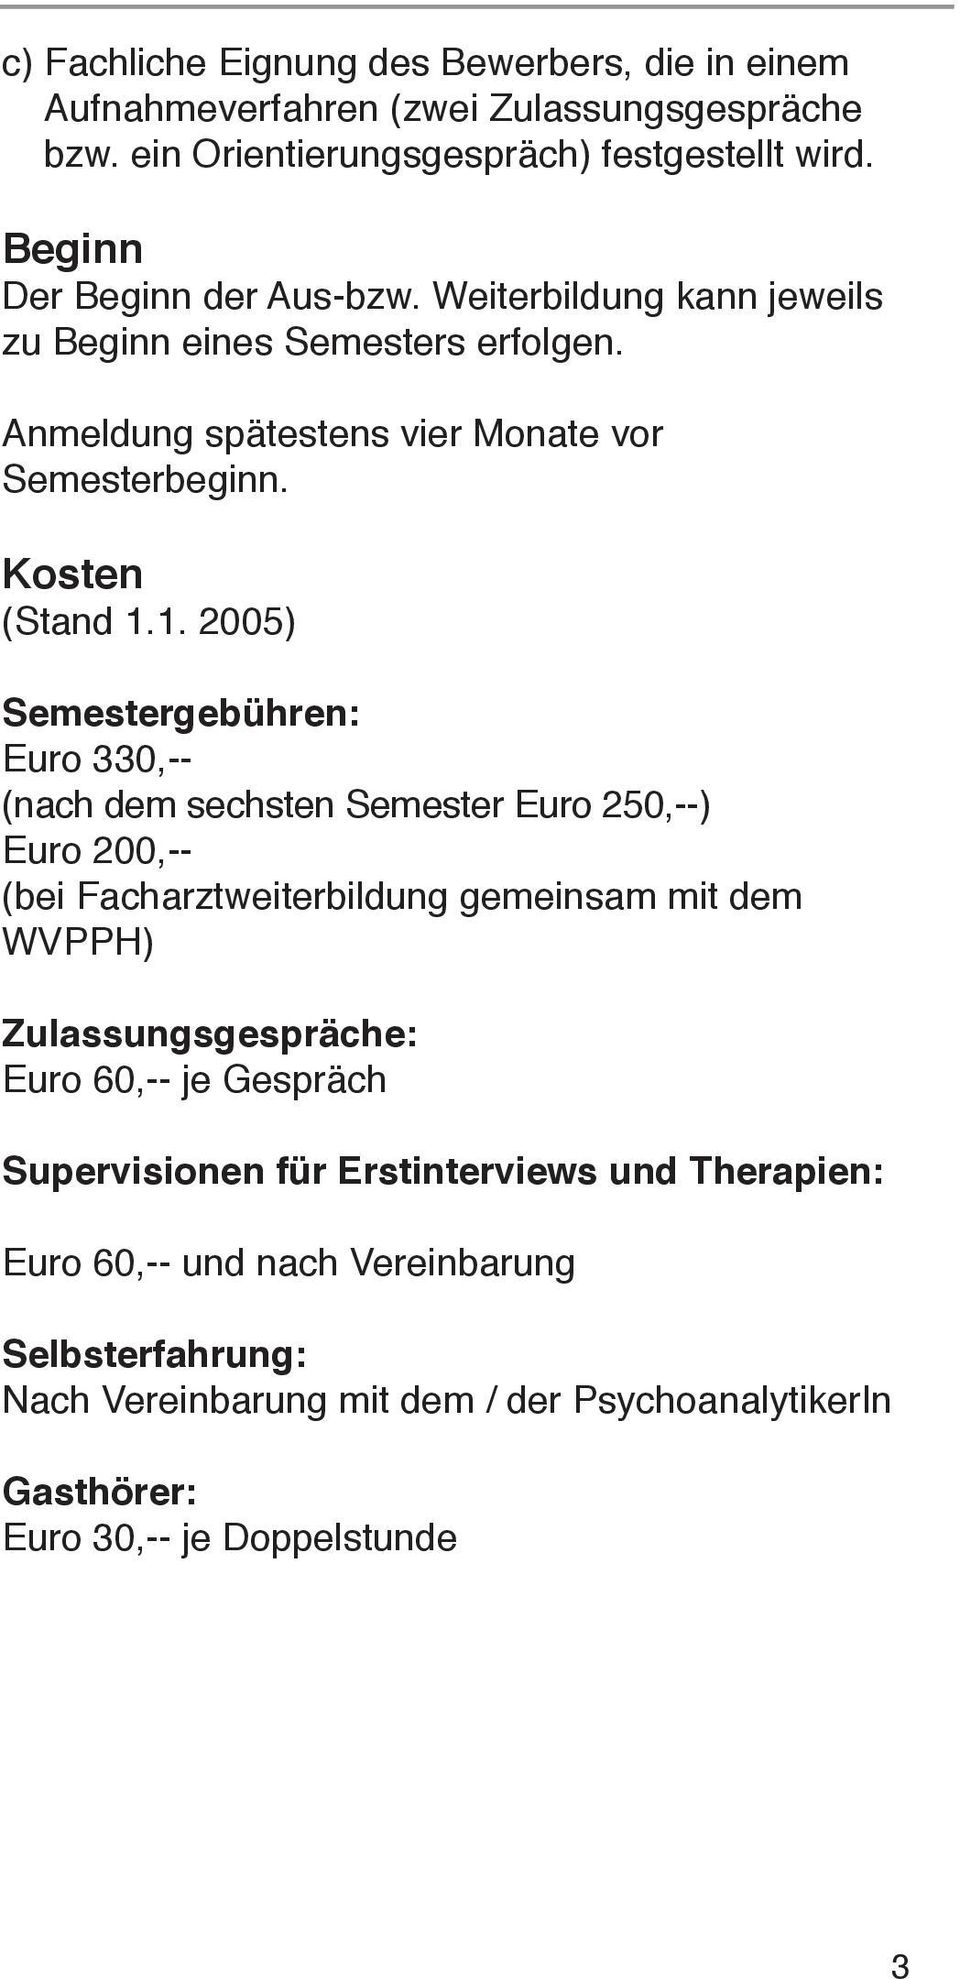 1. 2005) Semestergebühren: Euro 330,-- (nach dem sechsten Semester Euro 250,--) Euro 200,-- (bei Facharztweiterbildung gemeinsam mit dem WVPPH) Zulassungsgespräche: Euro